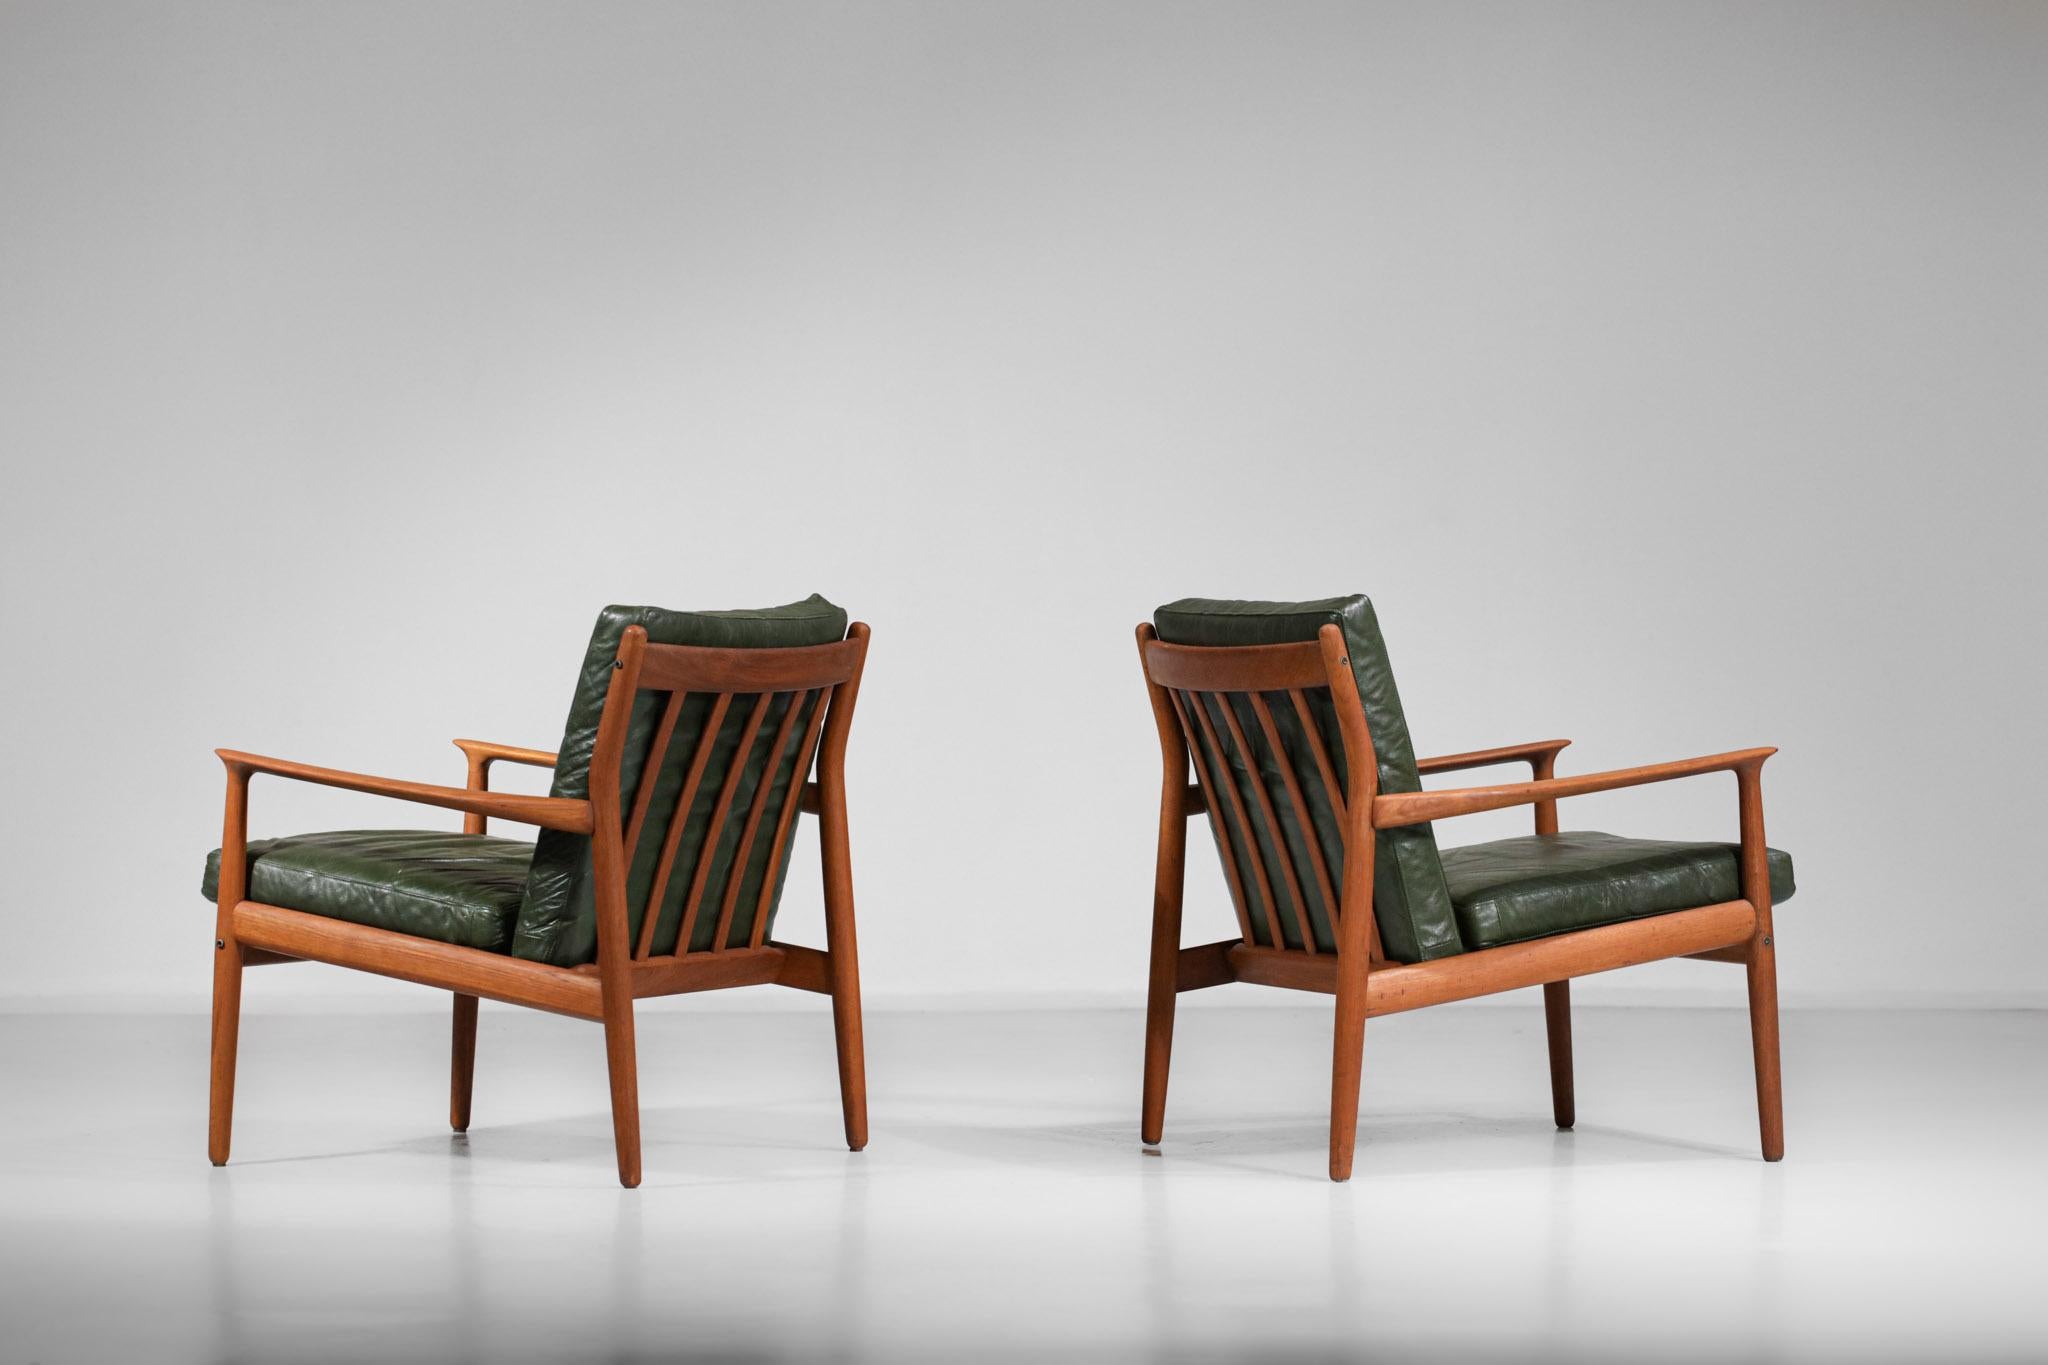 Paar Sessel des dänischen Designers Eriksen Svend Alter aus den Jahren 1960. Struktur in massivem Teakholz und Kissen in grünem Leder der Herkunft. Die geschwungenen Arme, die typisch für das skandinavische Design dieser Zeit sind, sind sehr schön